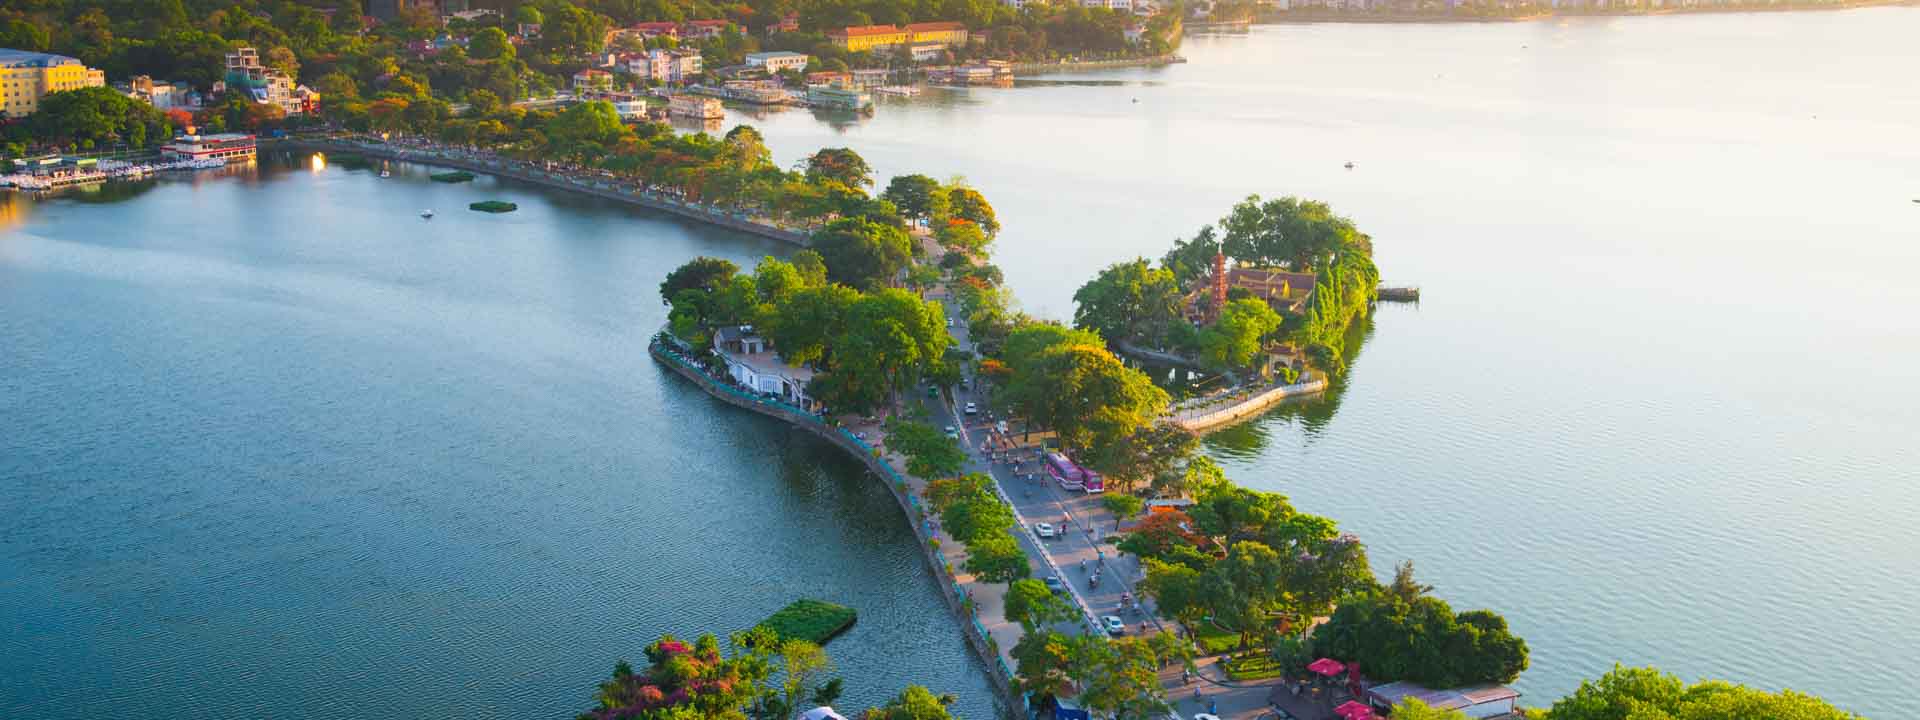 Best of Vietnam Cambodia Tour 3-week Itinerary